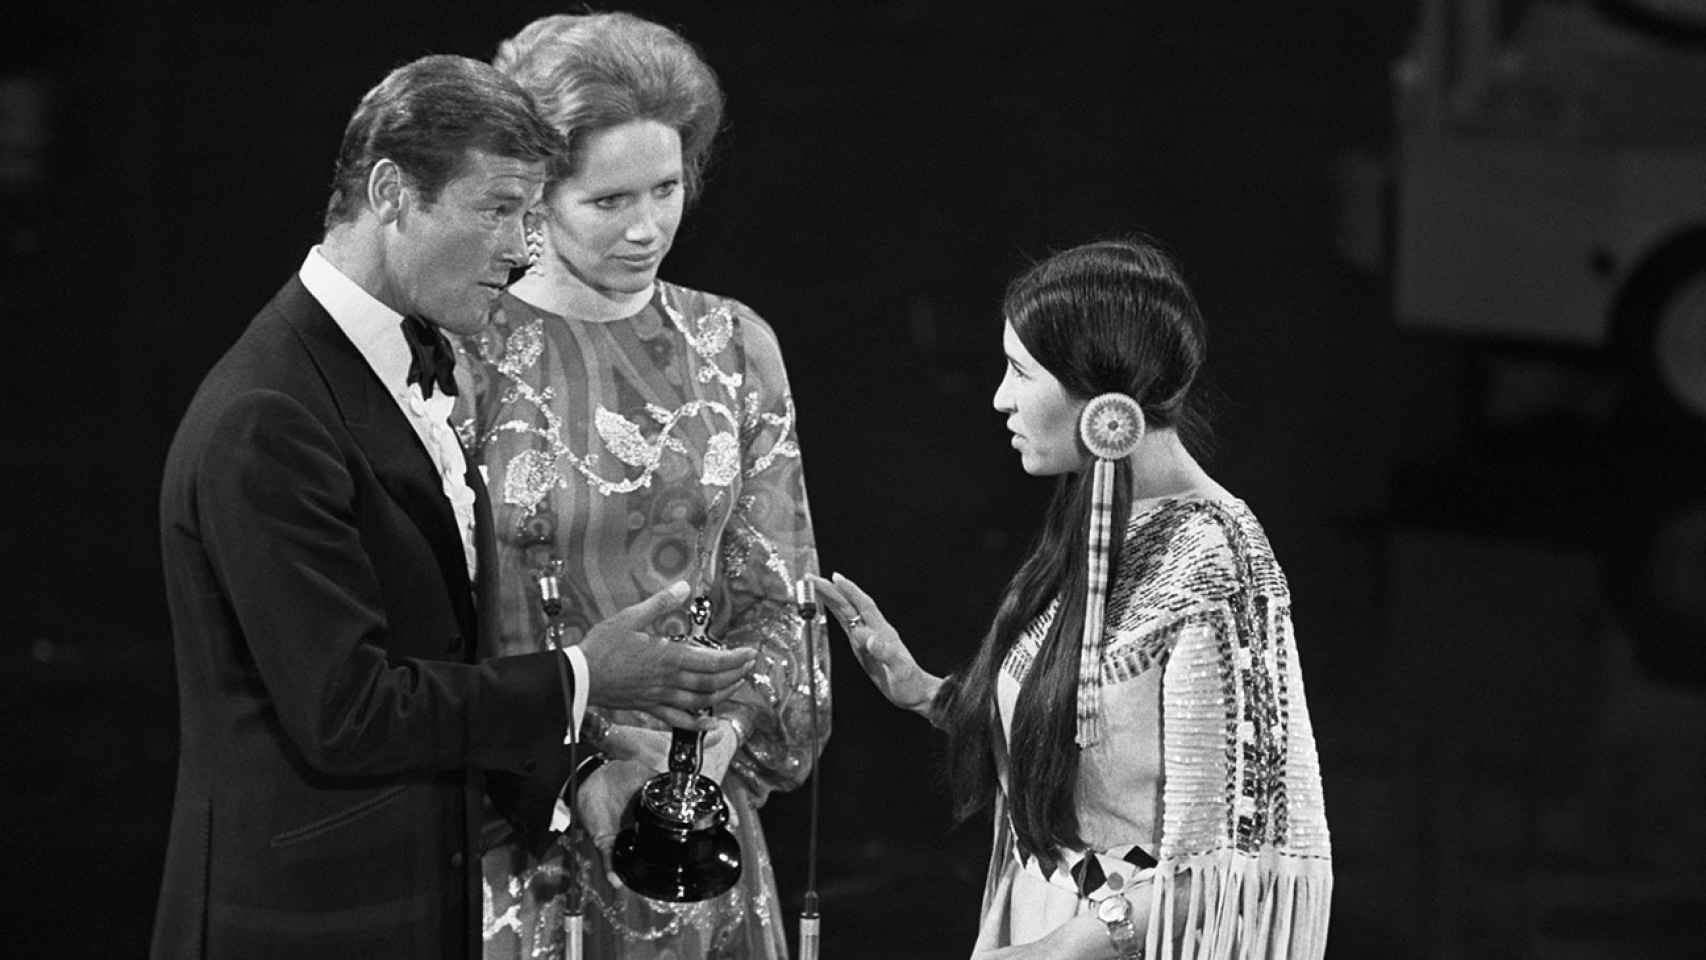 Marlon Brando rechazó su Oscar por el trato de Hollywood a los indios.